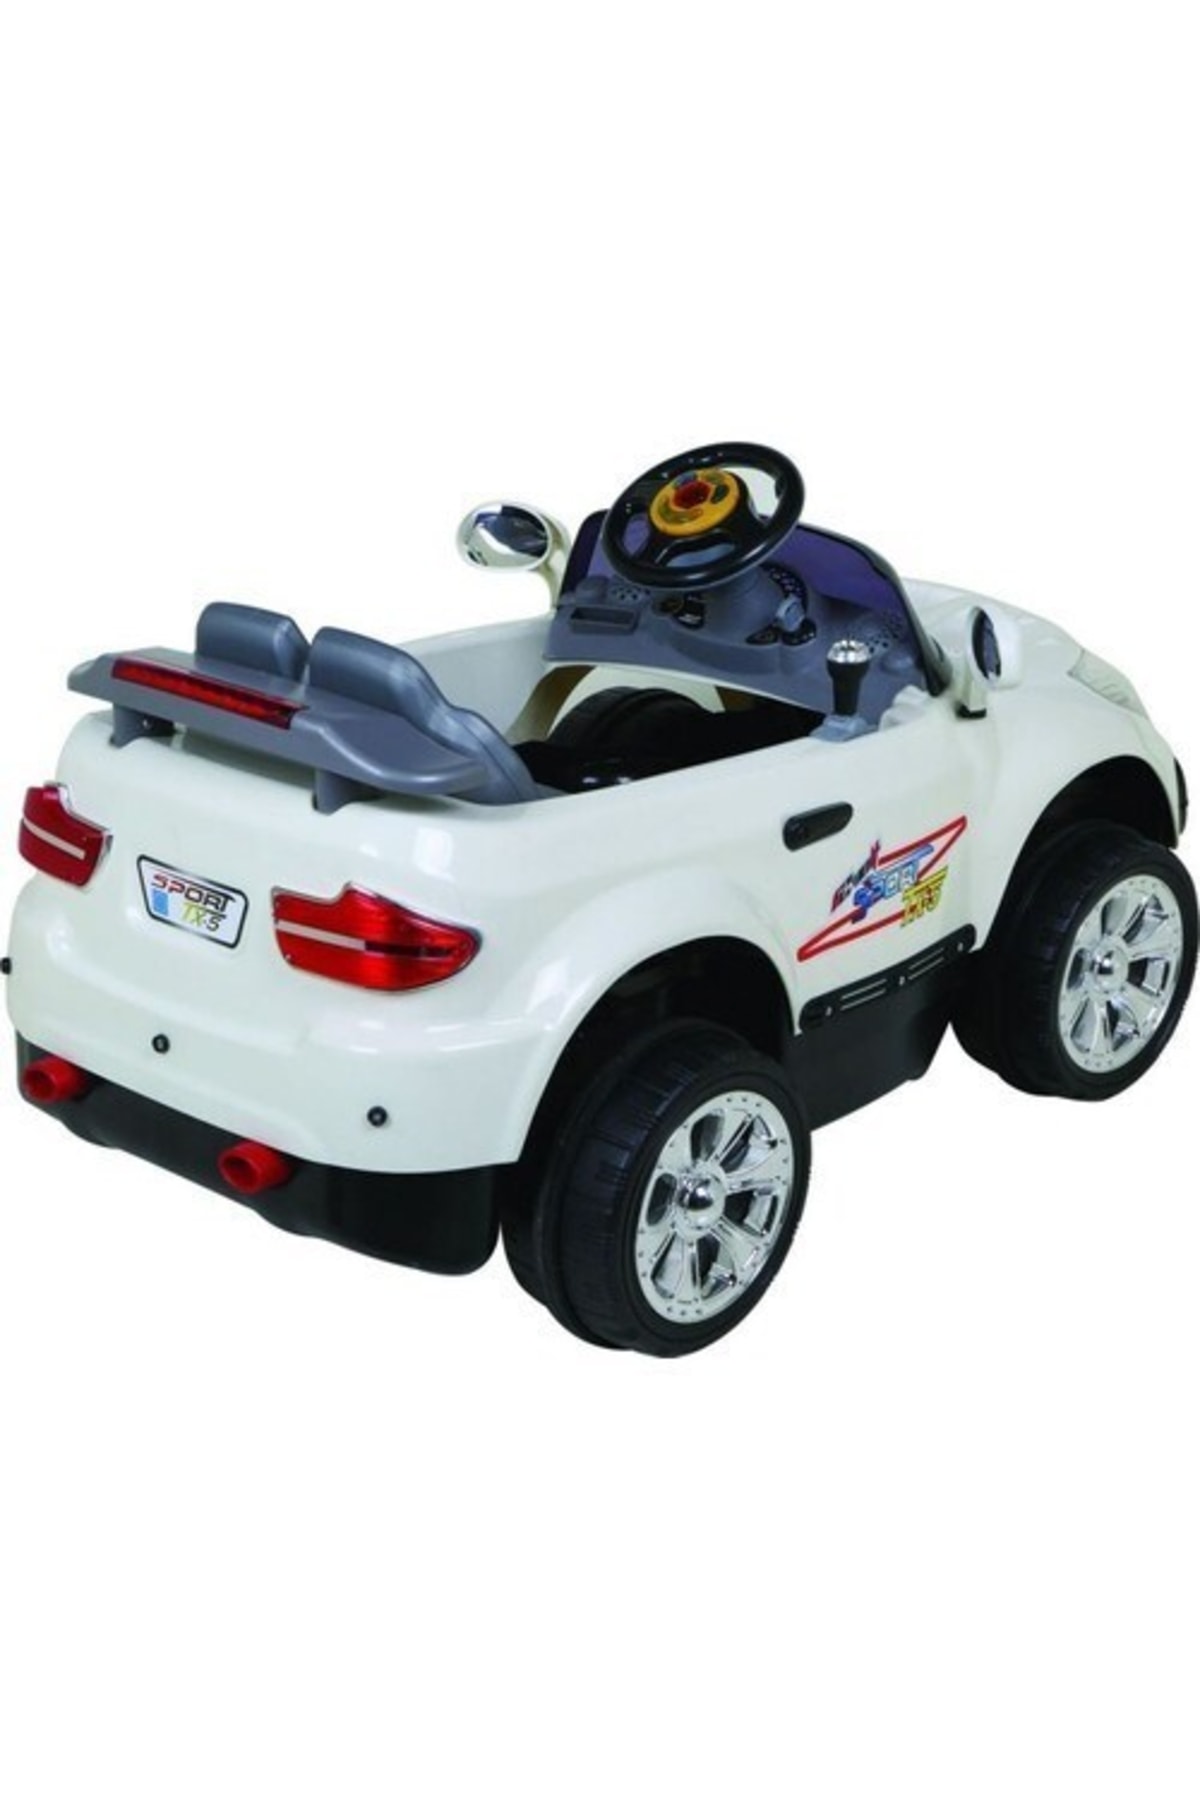 Aliş Toys Aliş Akülü Çocuk Arabası 12 Volt Turbo Uzaktan Kumandalı Tx5 Sport 605-k